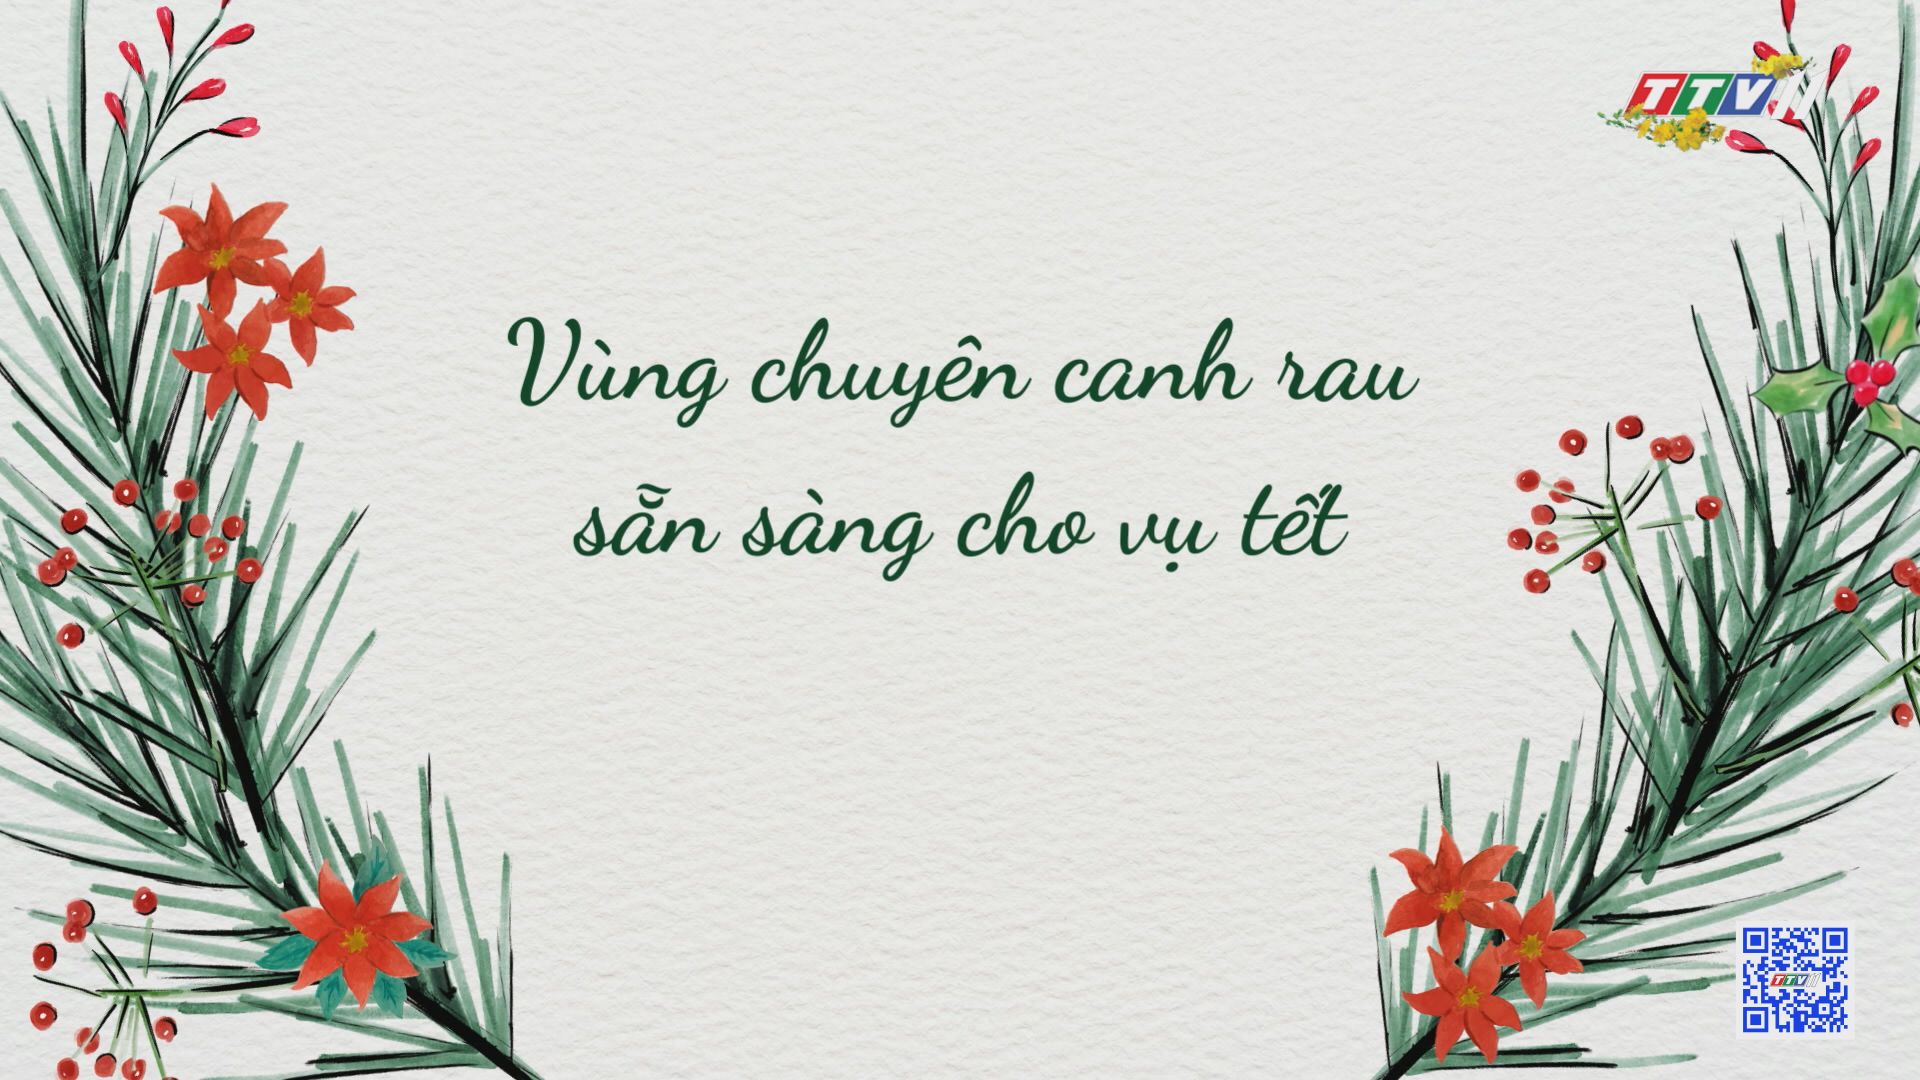 VÙNG CHUYÊN CANH RAU SẴN SÀNG CHO VỤ TẾT | Nông nghiệp Tây Ninh | TayNinhTV